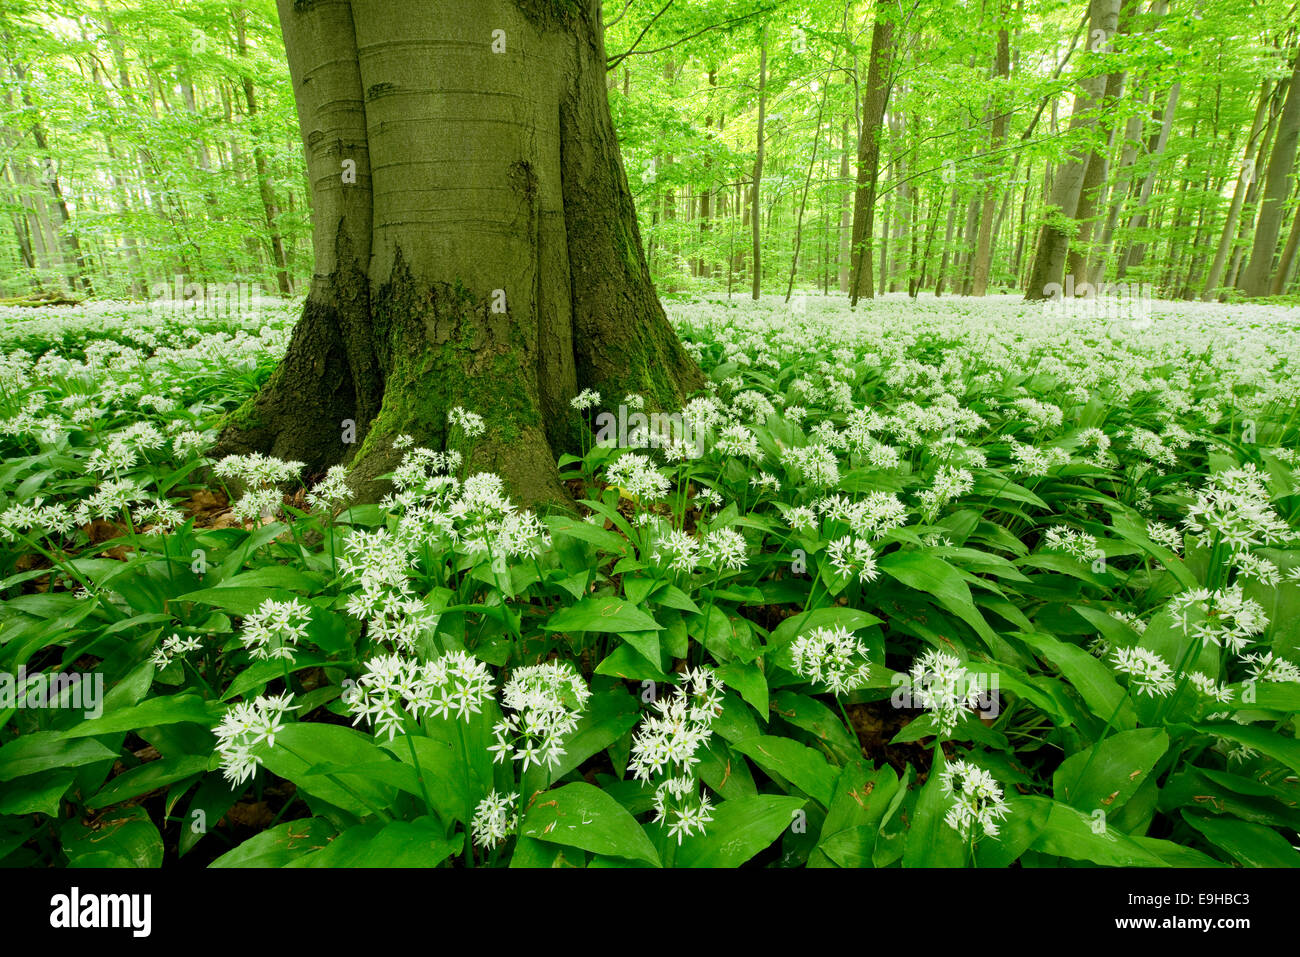 Ramsons (Allium ursinum) flowering, Hainich National Park, Thuringia, Germany Stock Photo